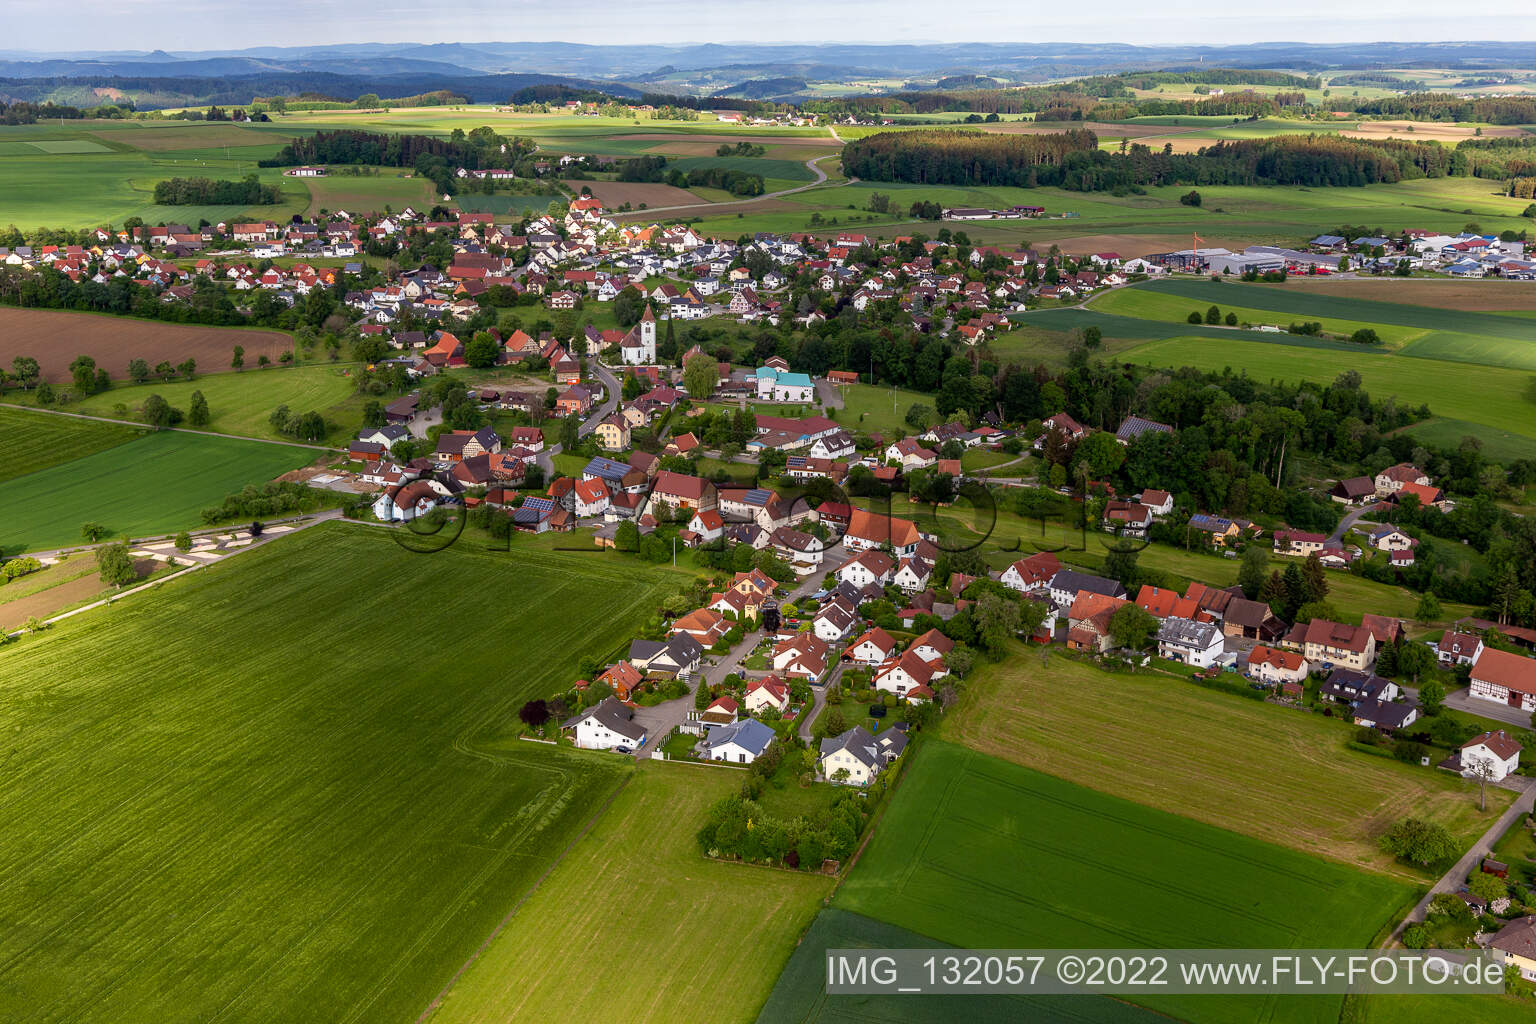 Luftbild von Herdwangen in Herdwangen-Schönach im Bundesland Baden-Württemberg, Deutschland